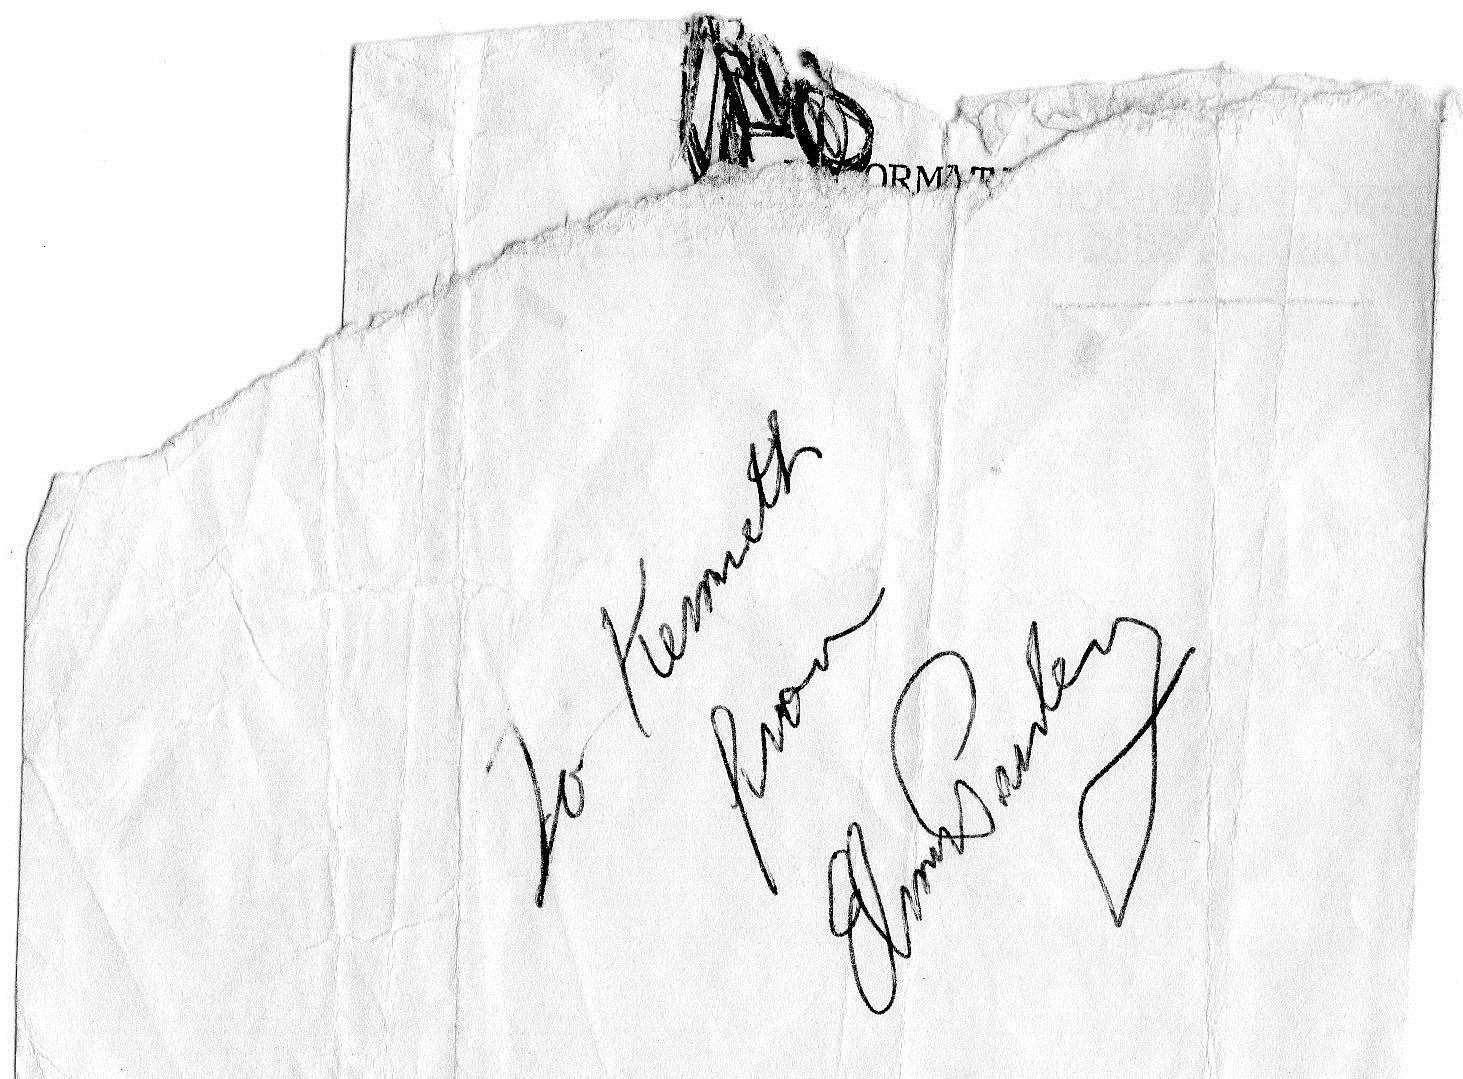 Ken Pimm's Elvis autograph